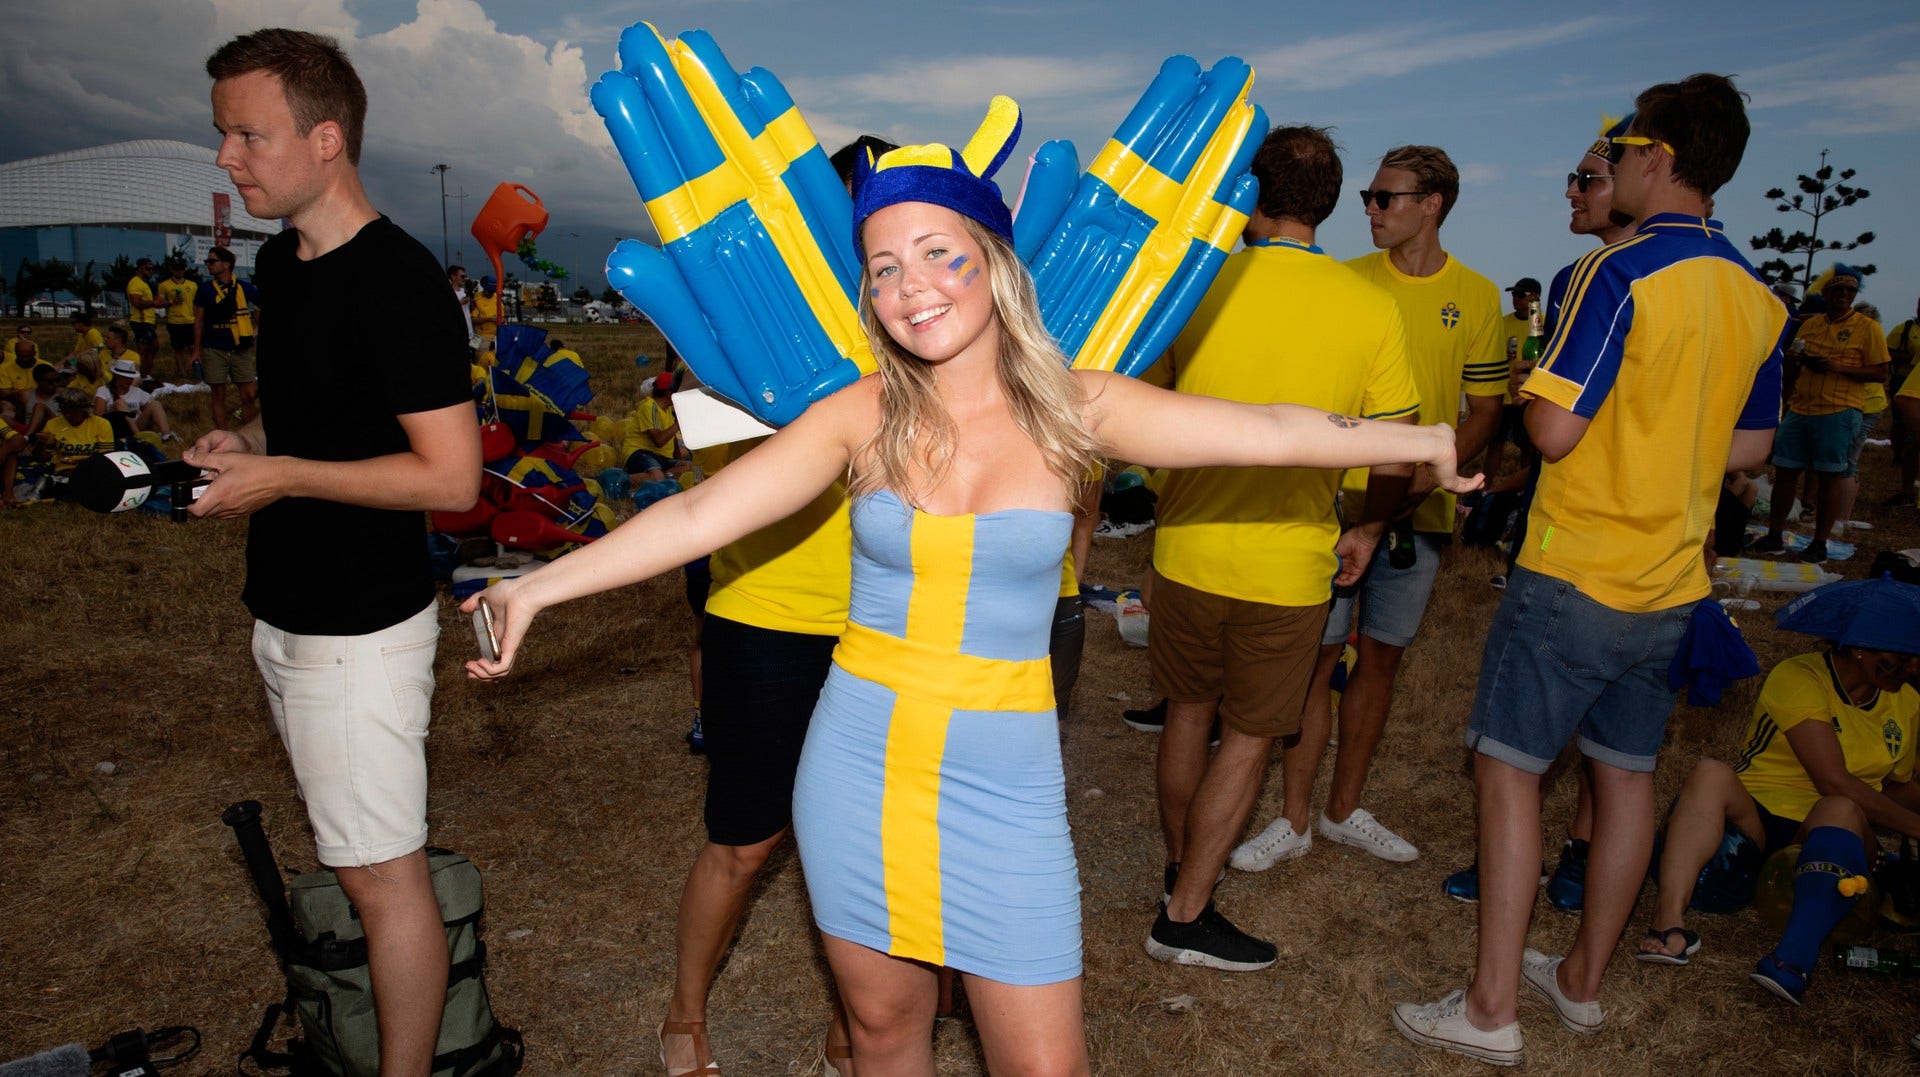 Insändare: ”Svenskar firar midsommar även utomlands”. 